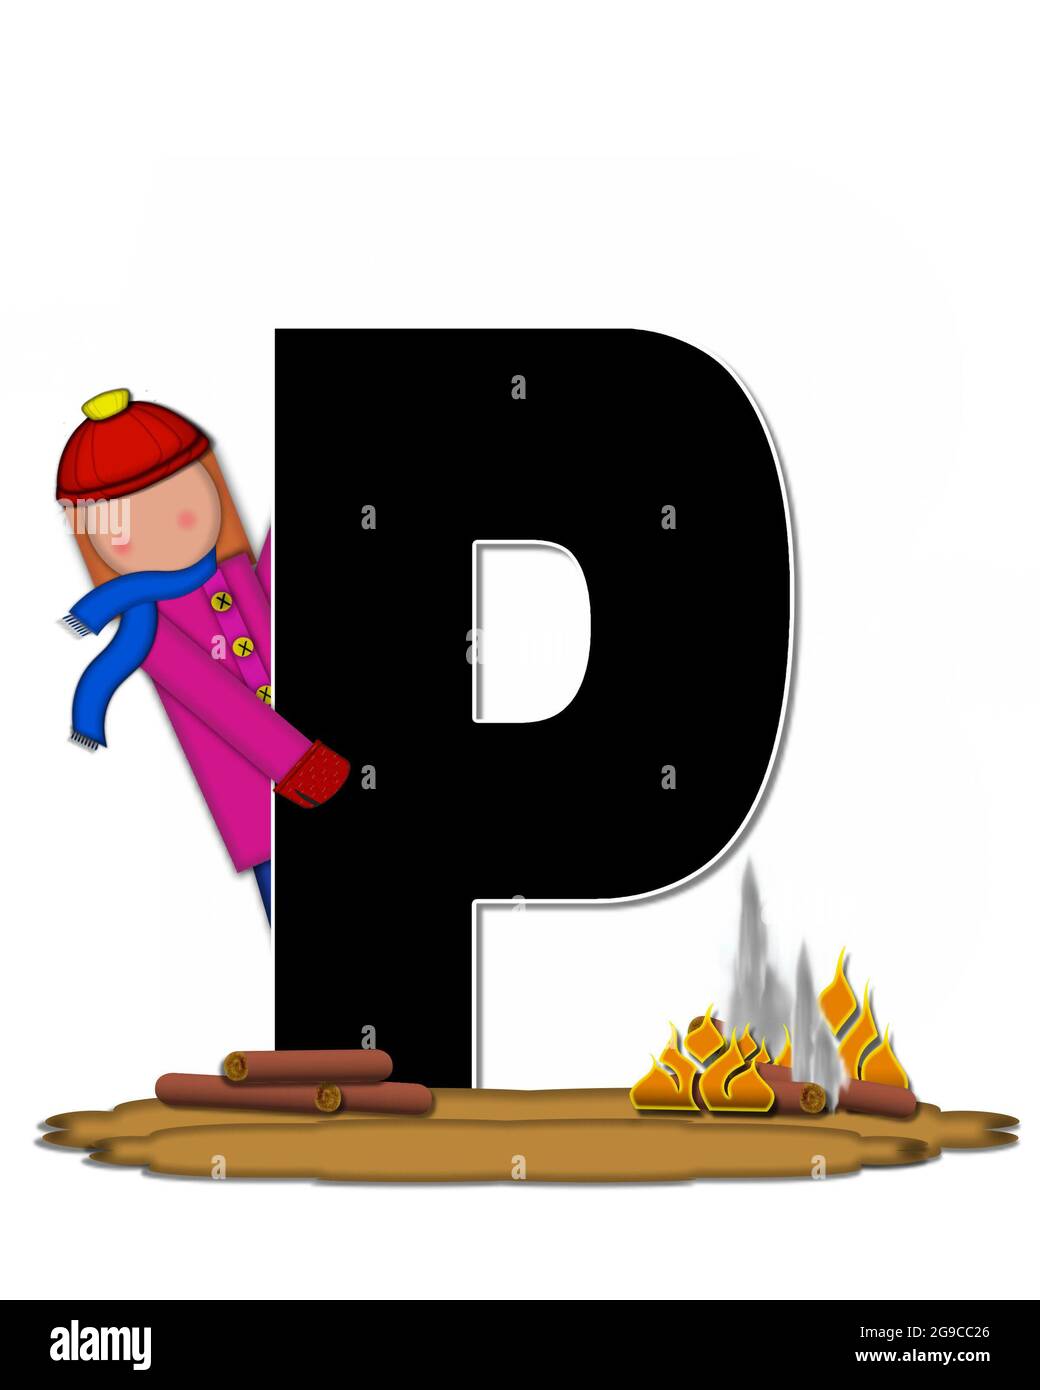 La lettre P, dans l'ensemble de l'alphabet 'Children Camp Fire', est noire  et entourée de blanc. Les enfants sont vêtus de bonnet, de foulard et de  mitaines et à leur Photo Stock -